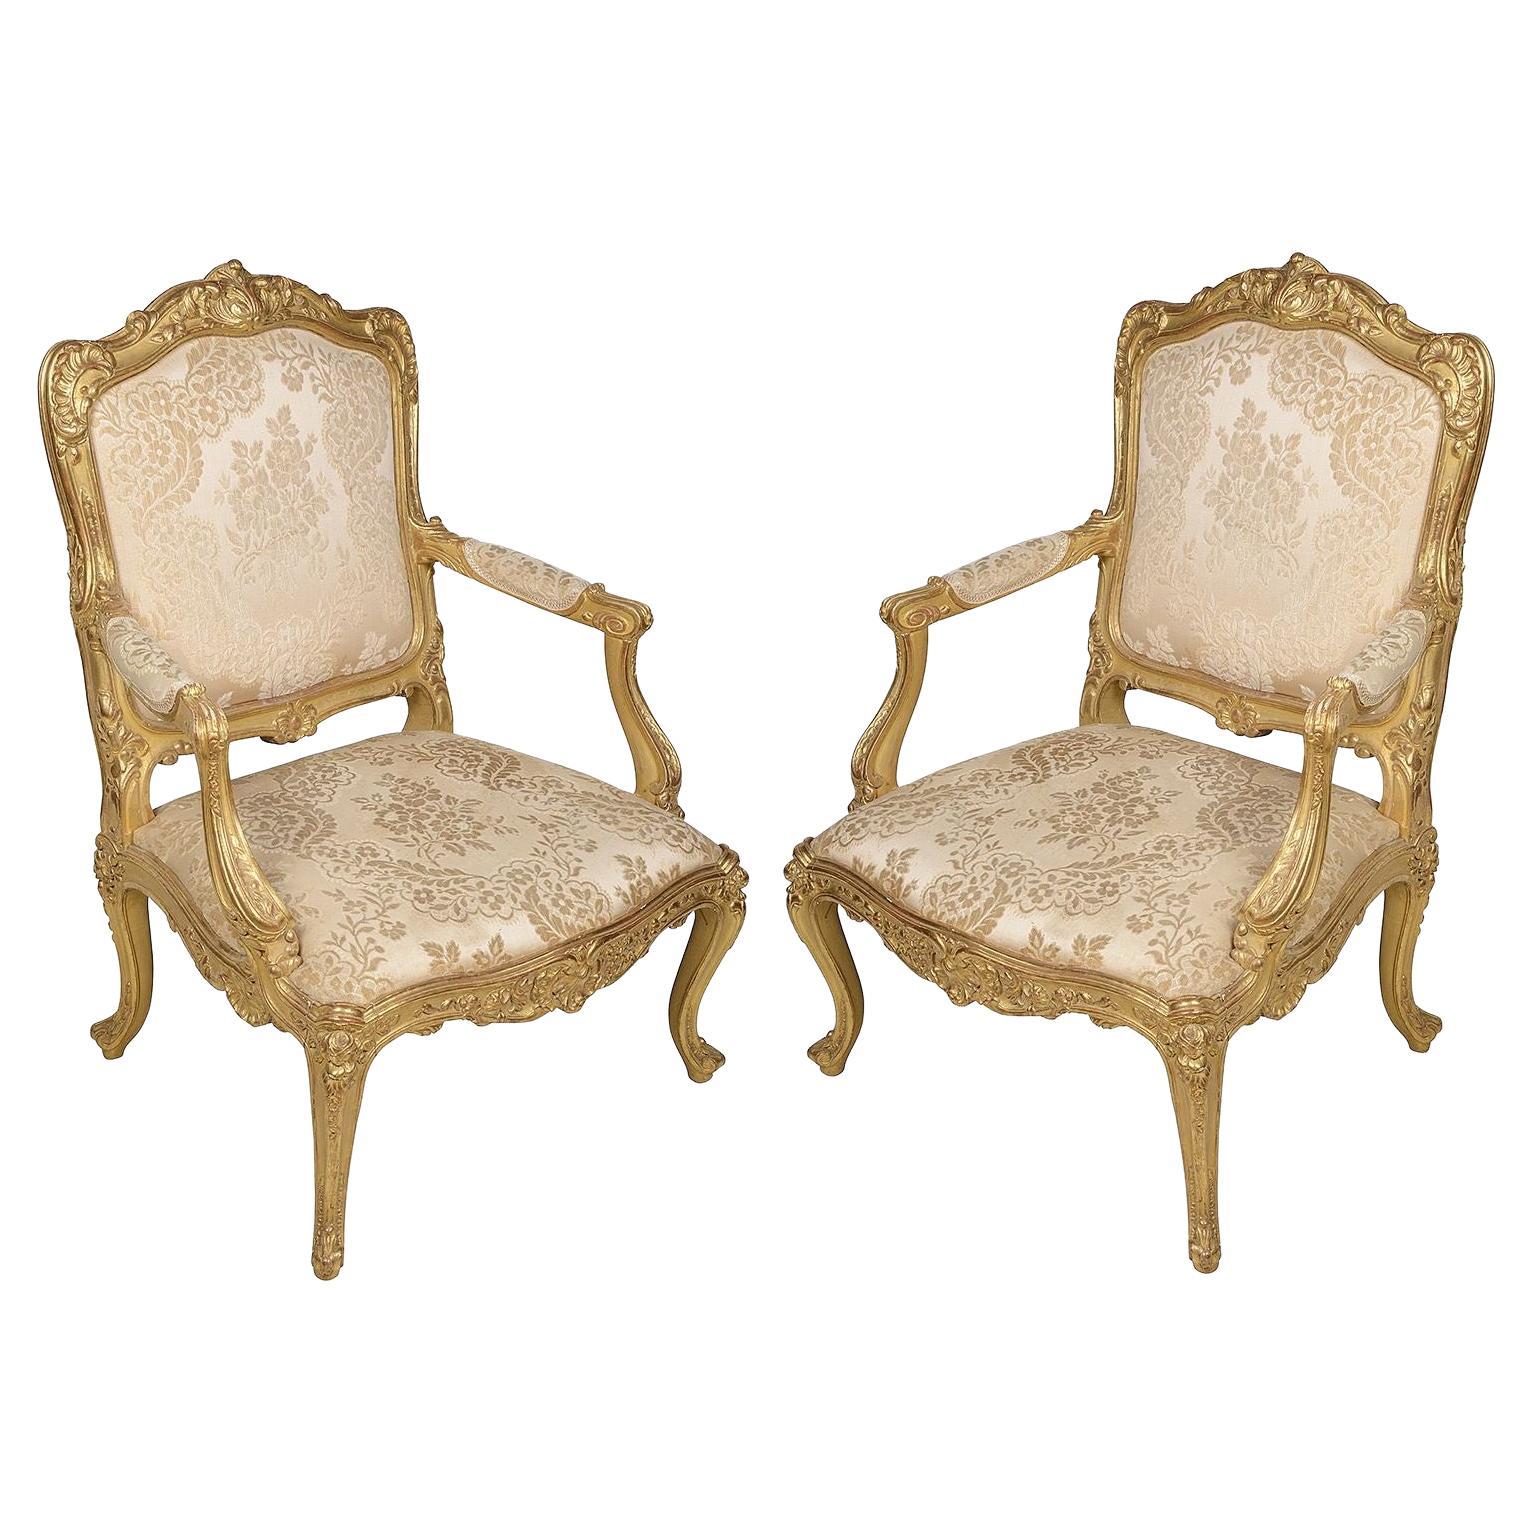 Paire de fauteuils de style Louis XVI en bois doré sculpté et français du 19ème siècle